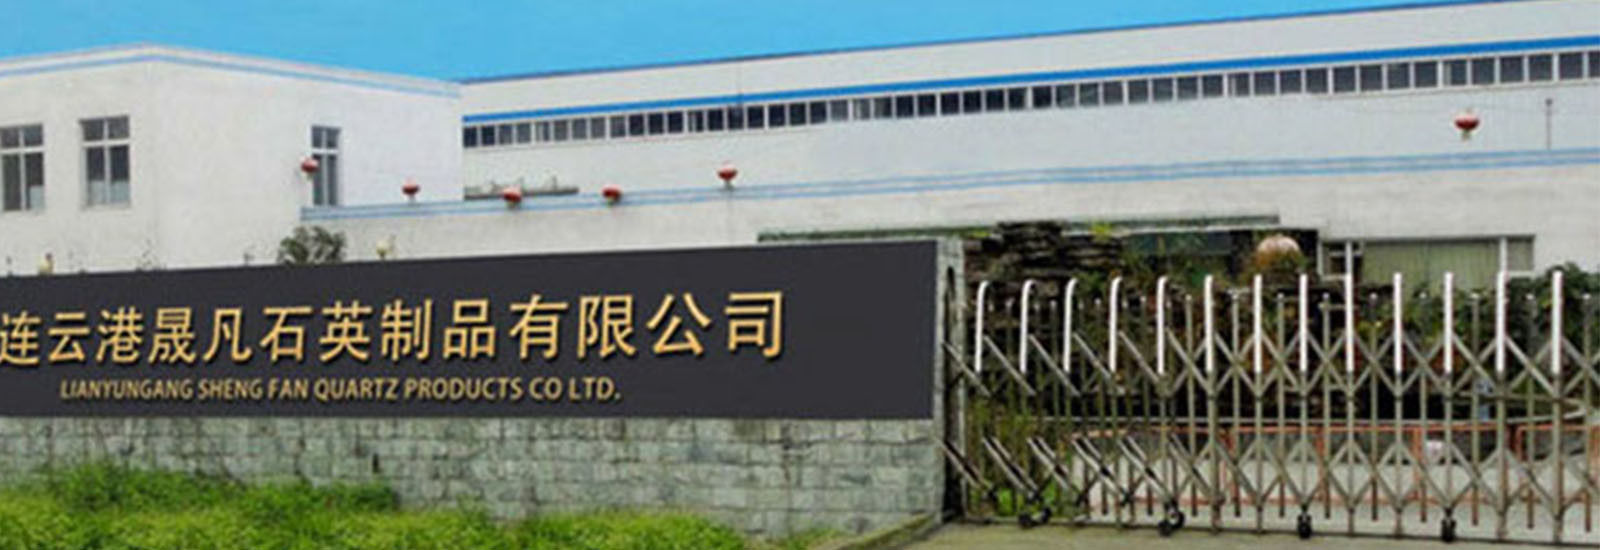 КИТАЙ Lianyungang Shengfan Quartz Product Co., Ltd Профиль компании